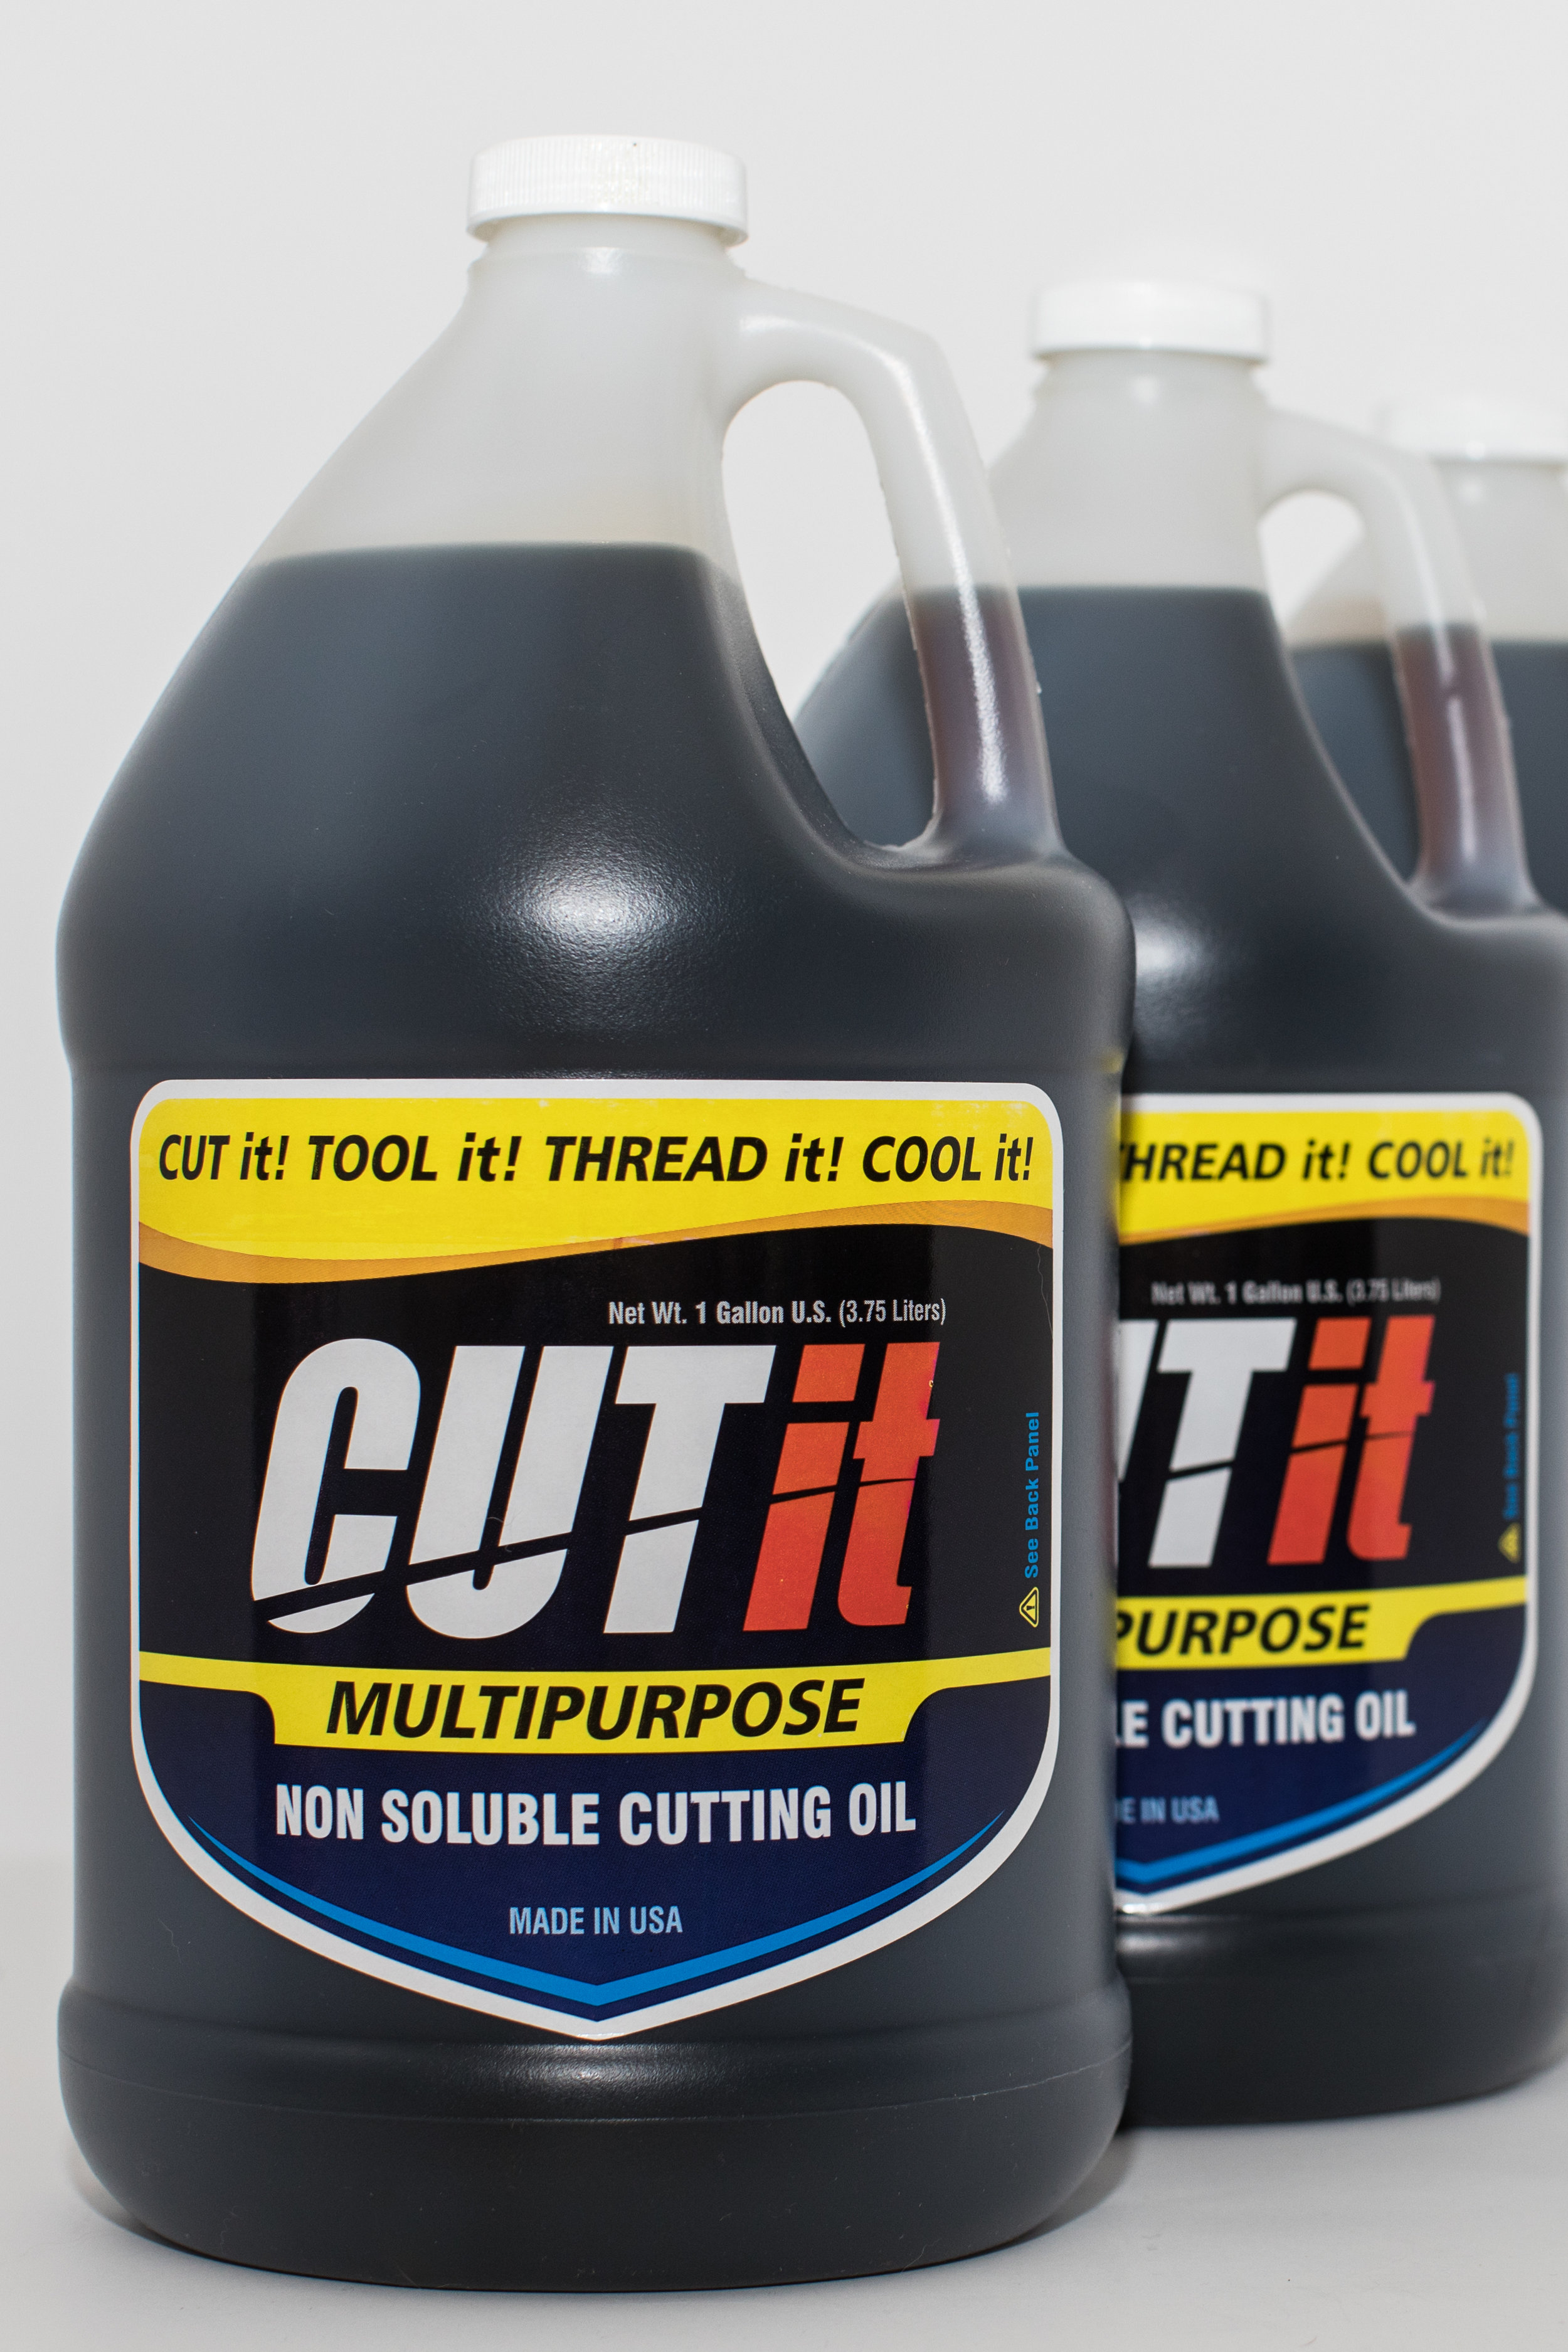 CUTit oil